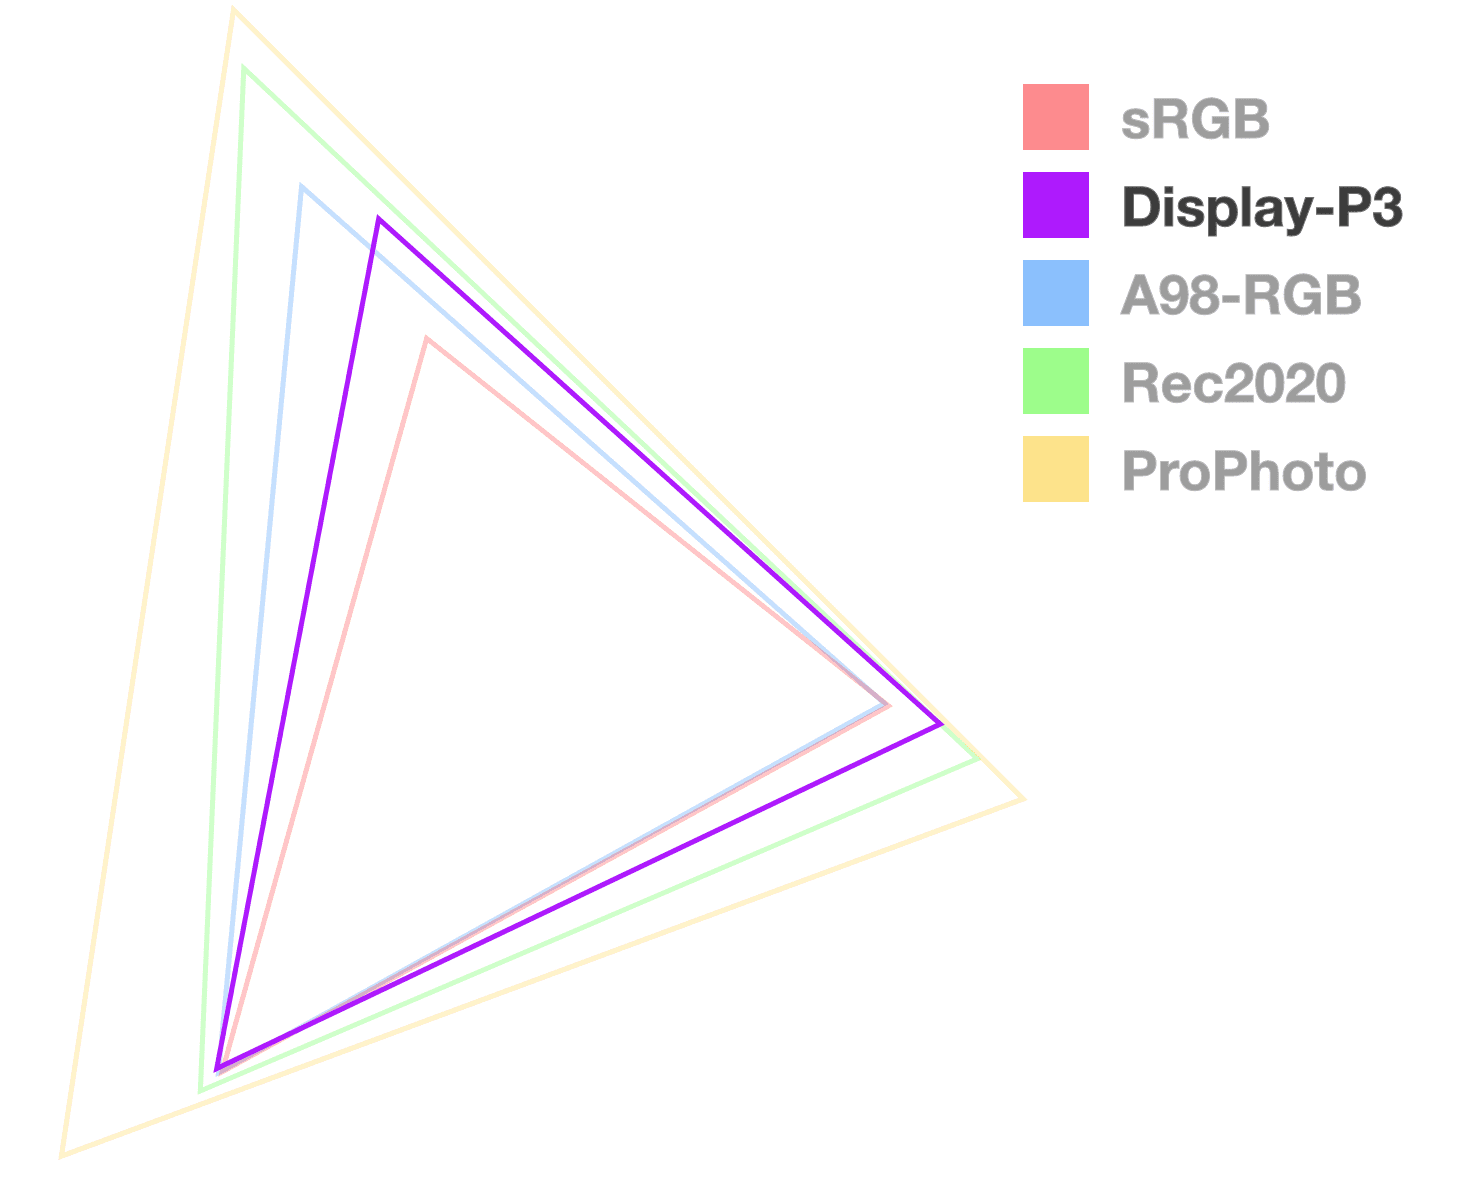 Segitiga P3 Display adalah satu-satunya yang sepenuhnya buram, untuk membantu
  memvisualisasikan ukuran gamut. Terlihat seperti nomor 2 dari yang terkecil.